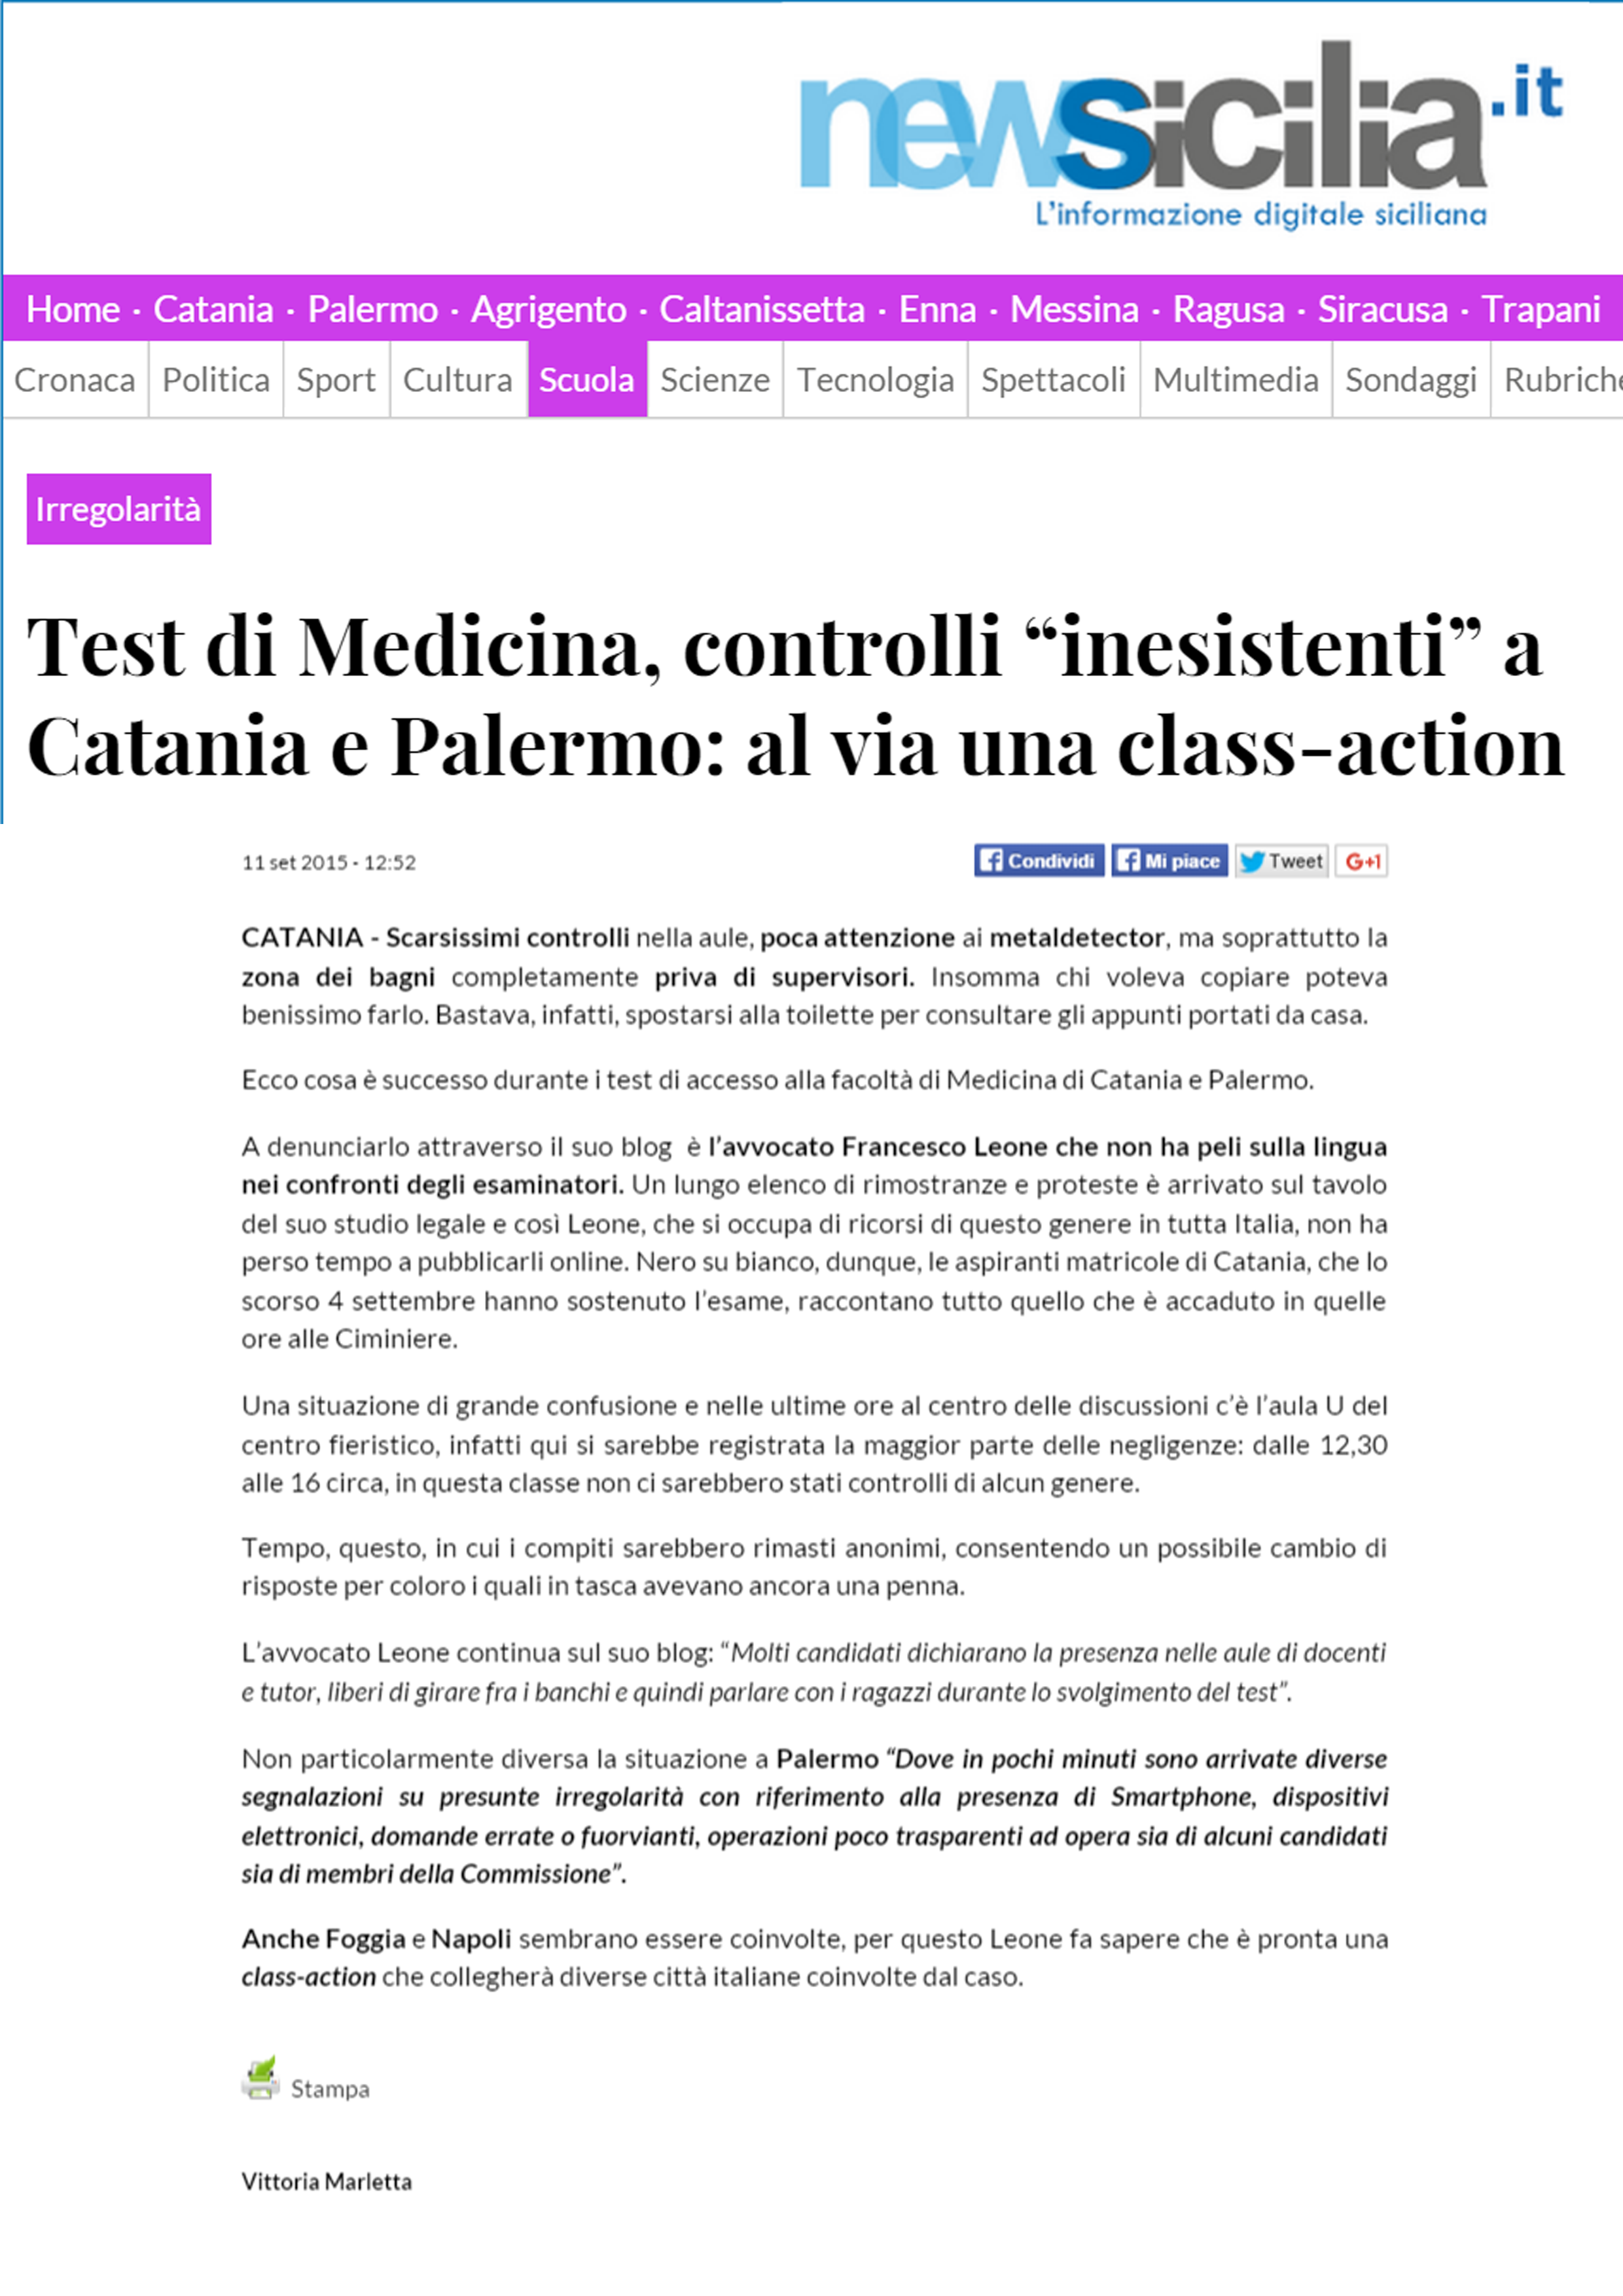 Test di Medicina controlli inesistenti a Catania e Palermo al via una class action